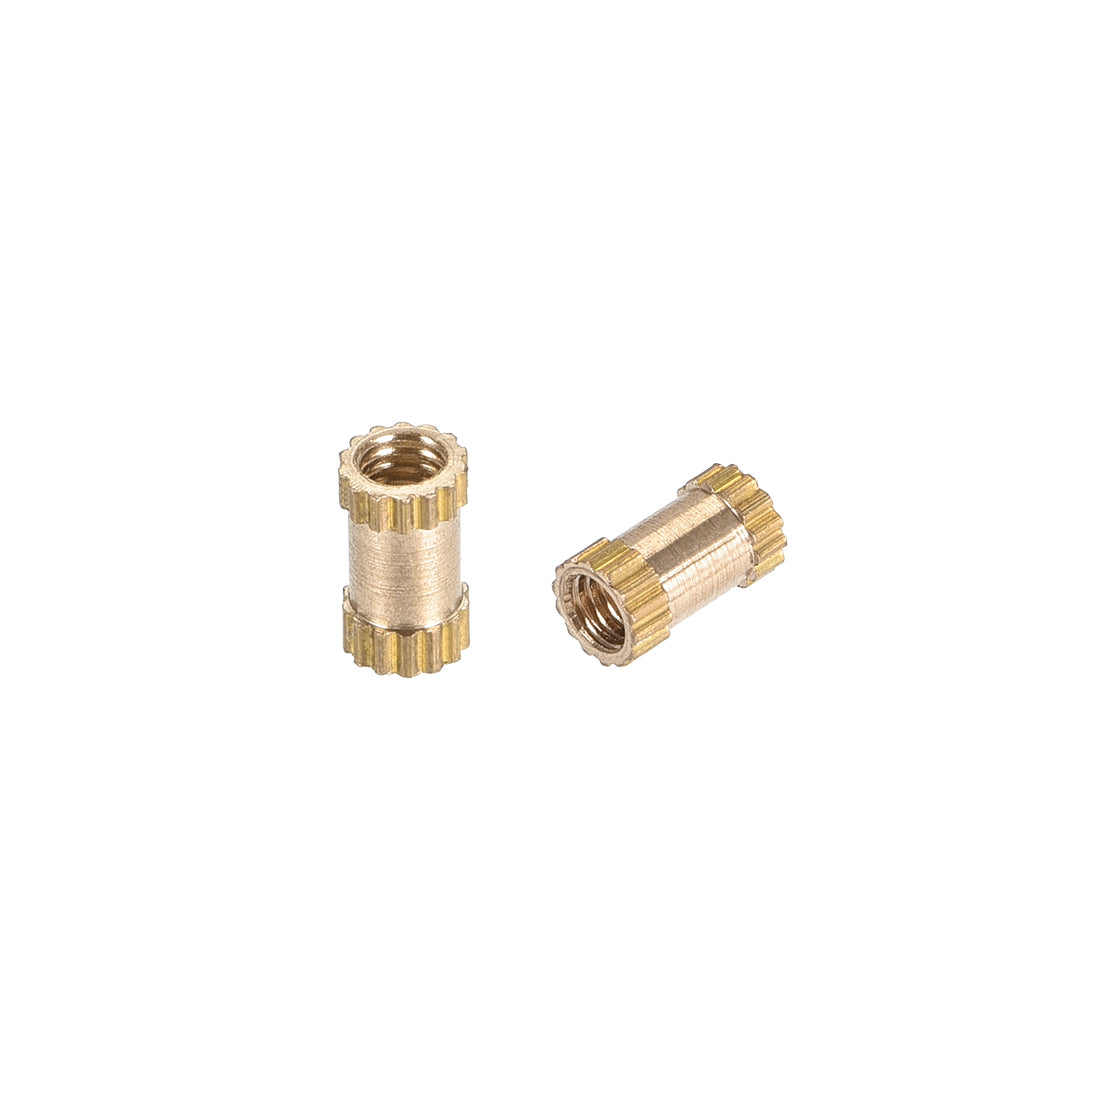 uxcell Uxcell Knurled Insert Nuts, M2.5 x 6mm(L) x 3.5mm(OD) Female Thread Brass Embedment Assortment Kit, 30 Pcs